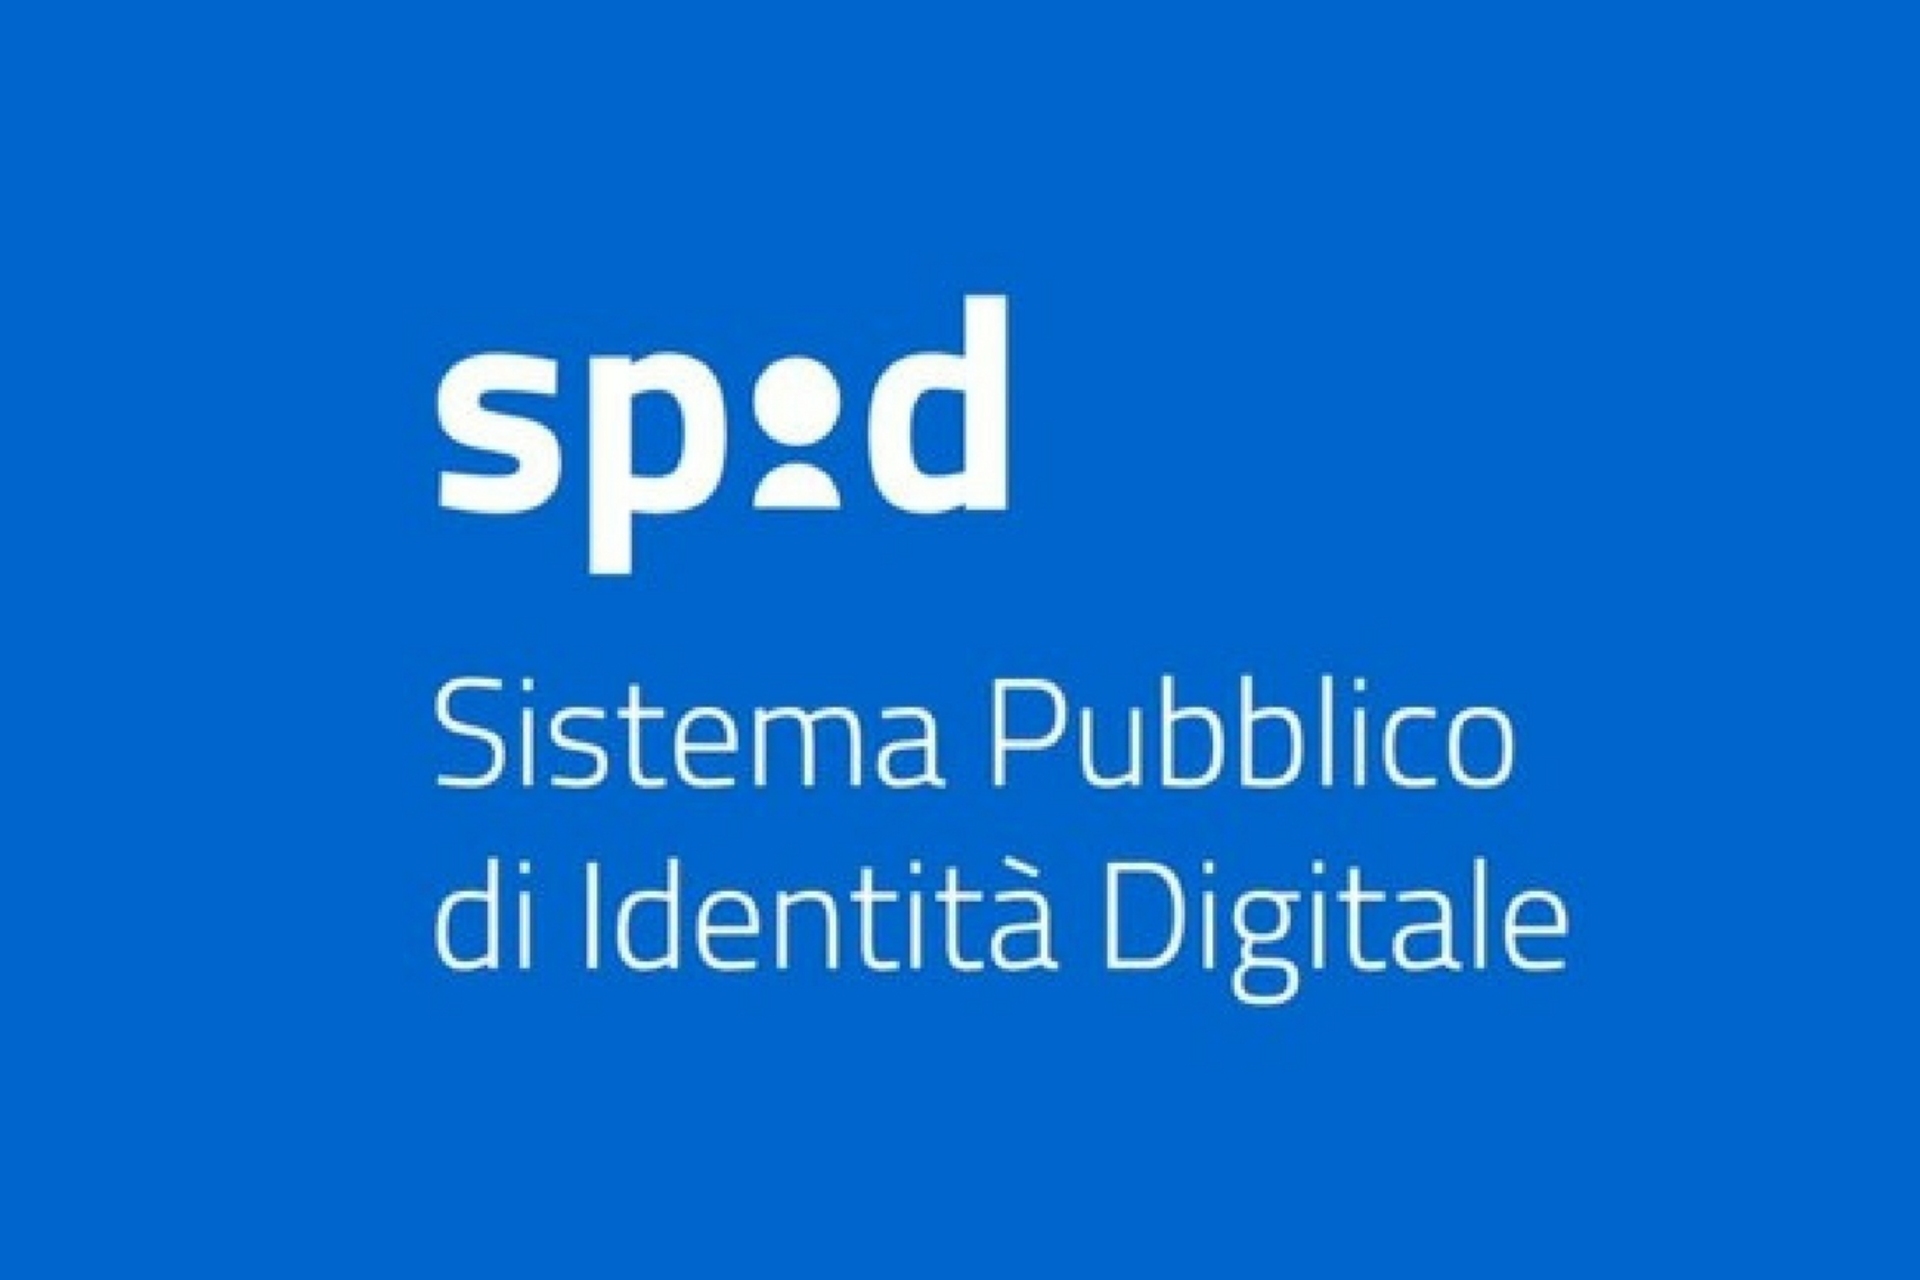 Texnologiya: Public Digital Identity System (SPID) har doim ham keksa odamlar uchun mos kelmaydi